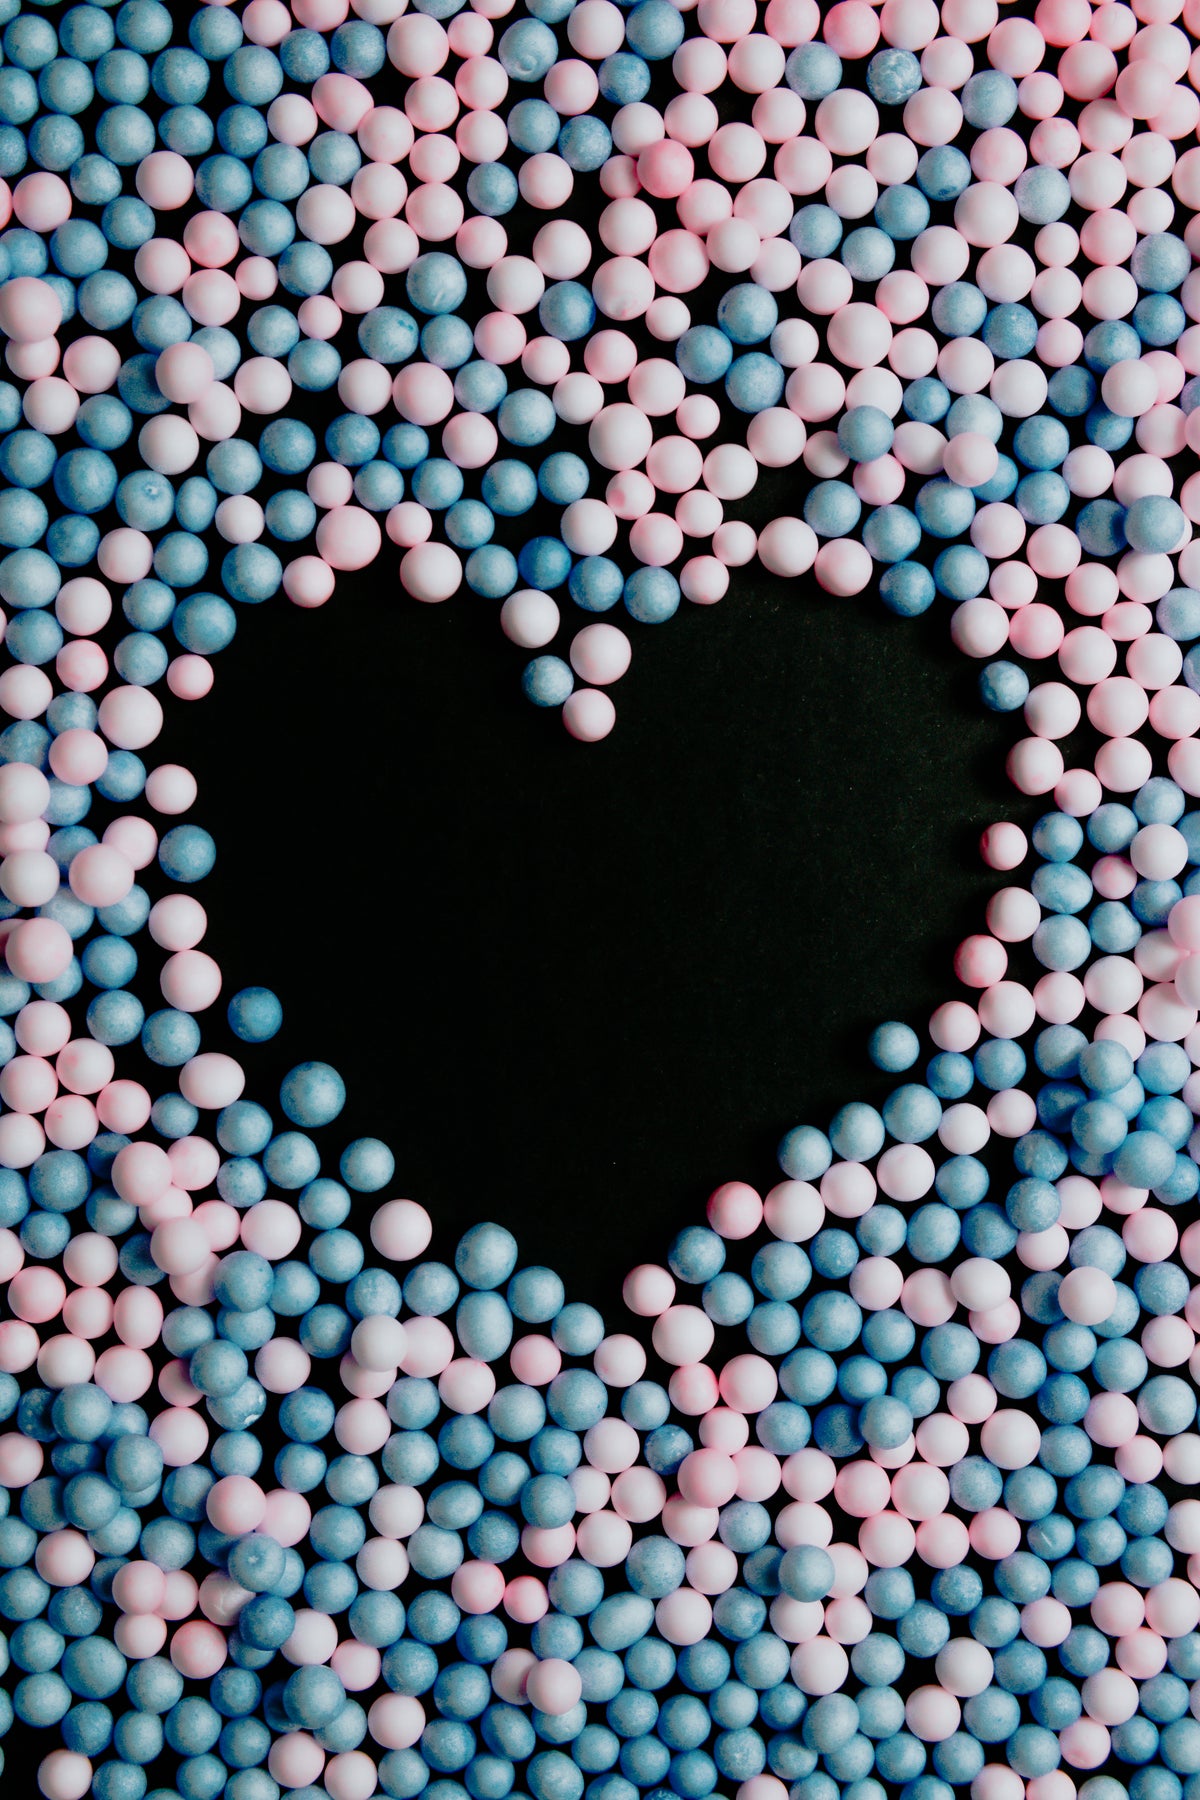 靠近蓝色和粉红色的球创建一个心脏